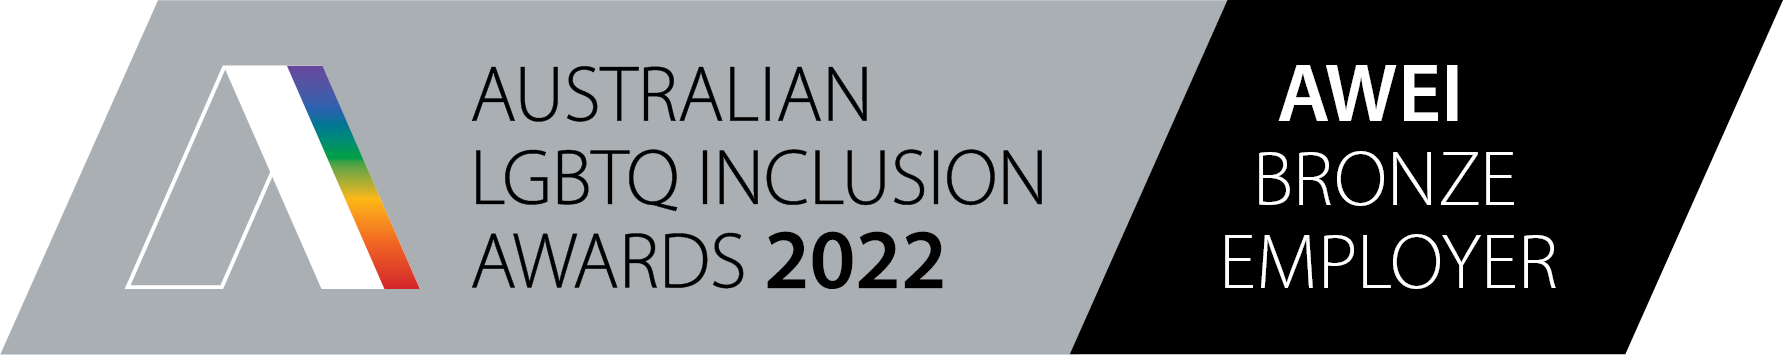 Australian LGBQT inclusion awards 2022